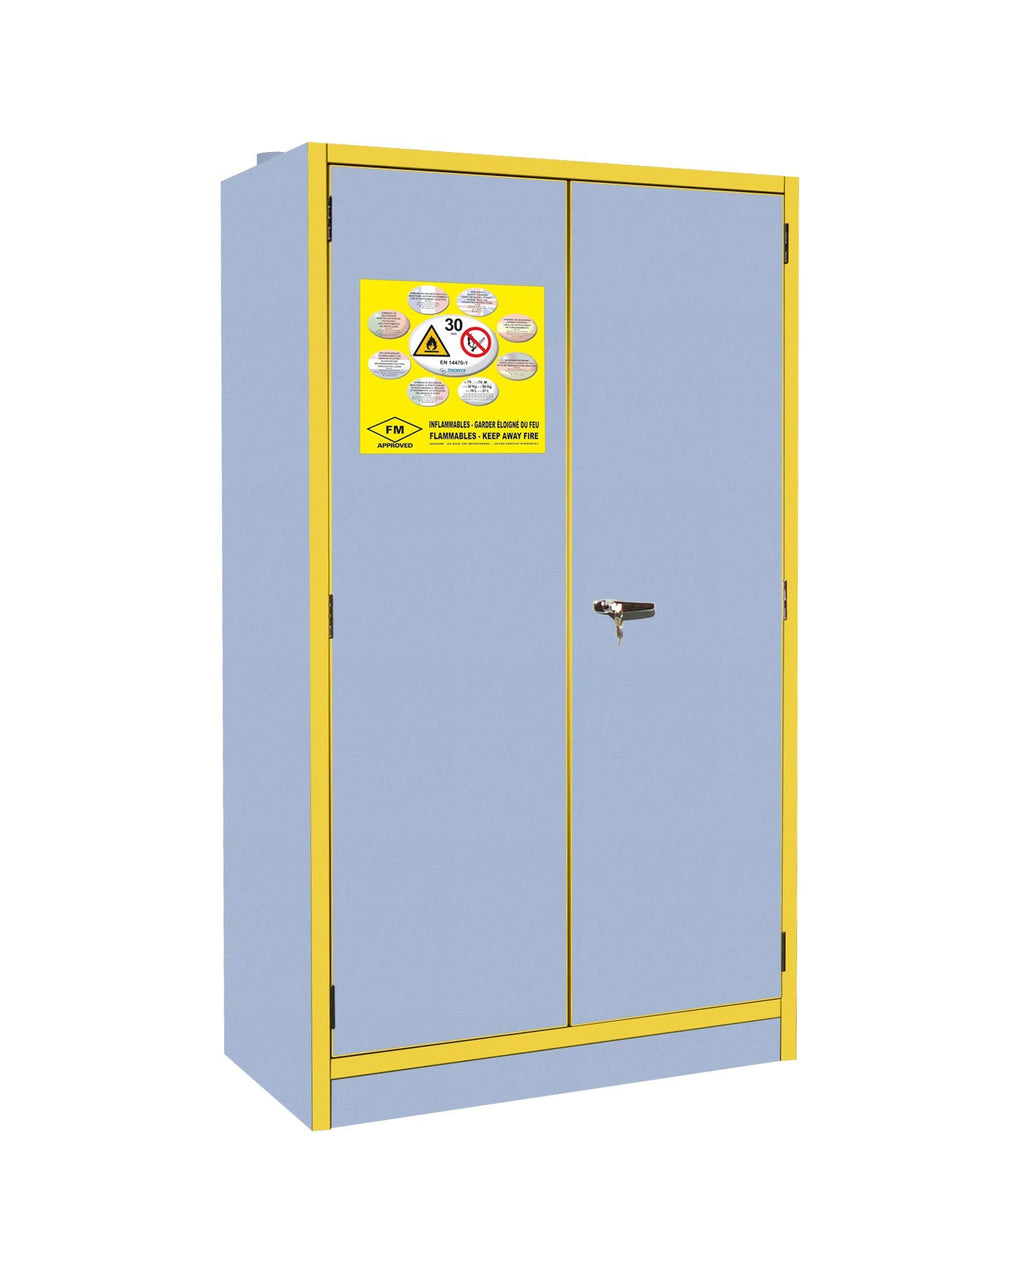 30 Minute 2 Door Fire Rated Cabinet (1980mm High) - 3035E|| 2 Doors